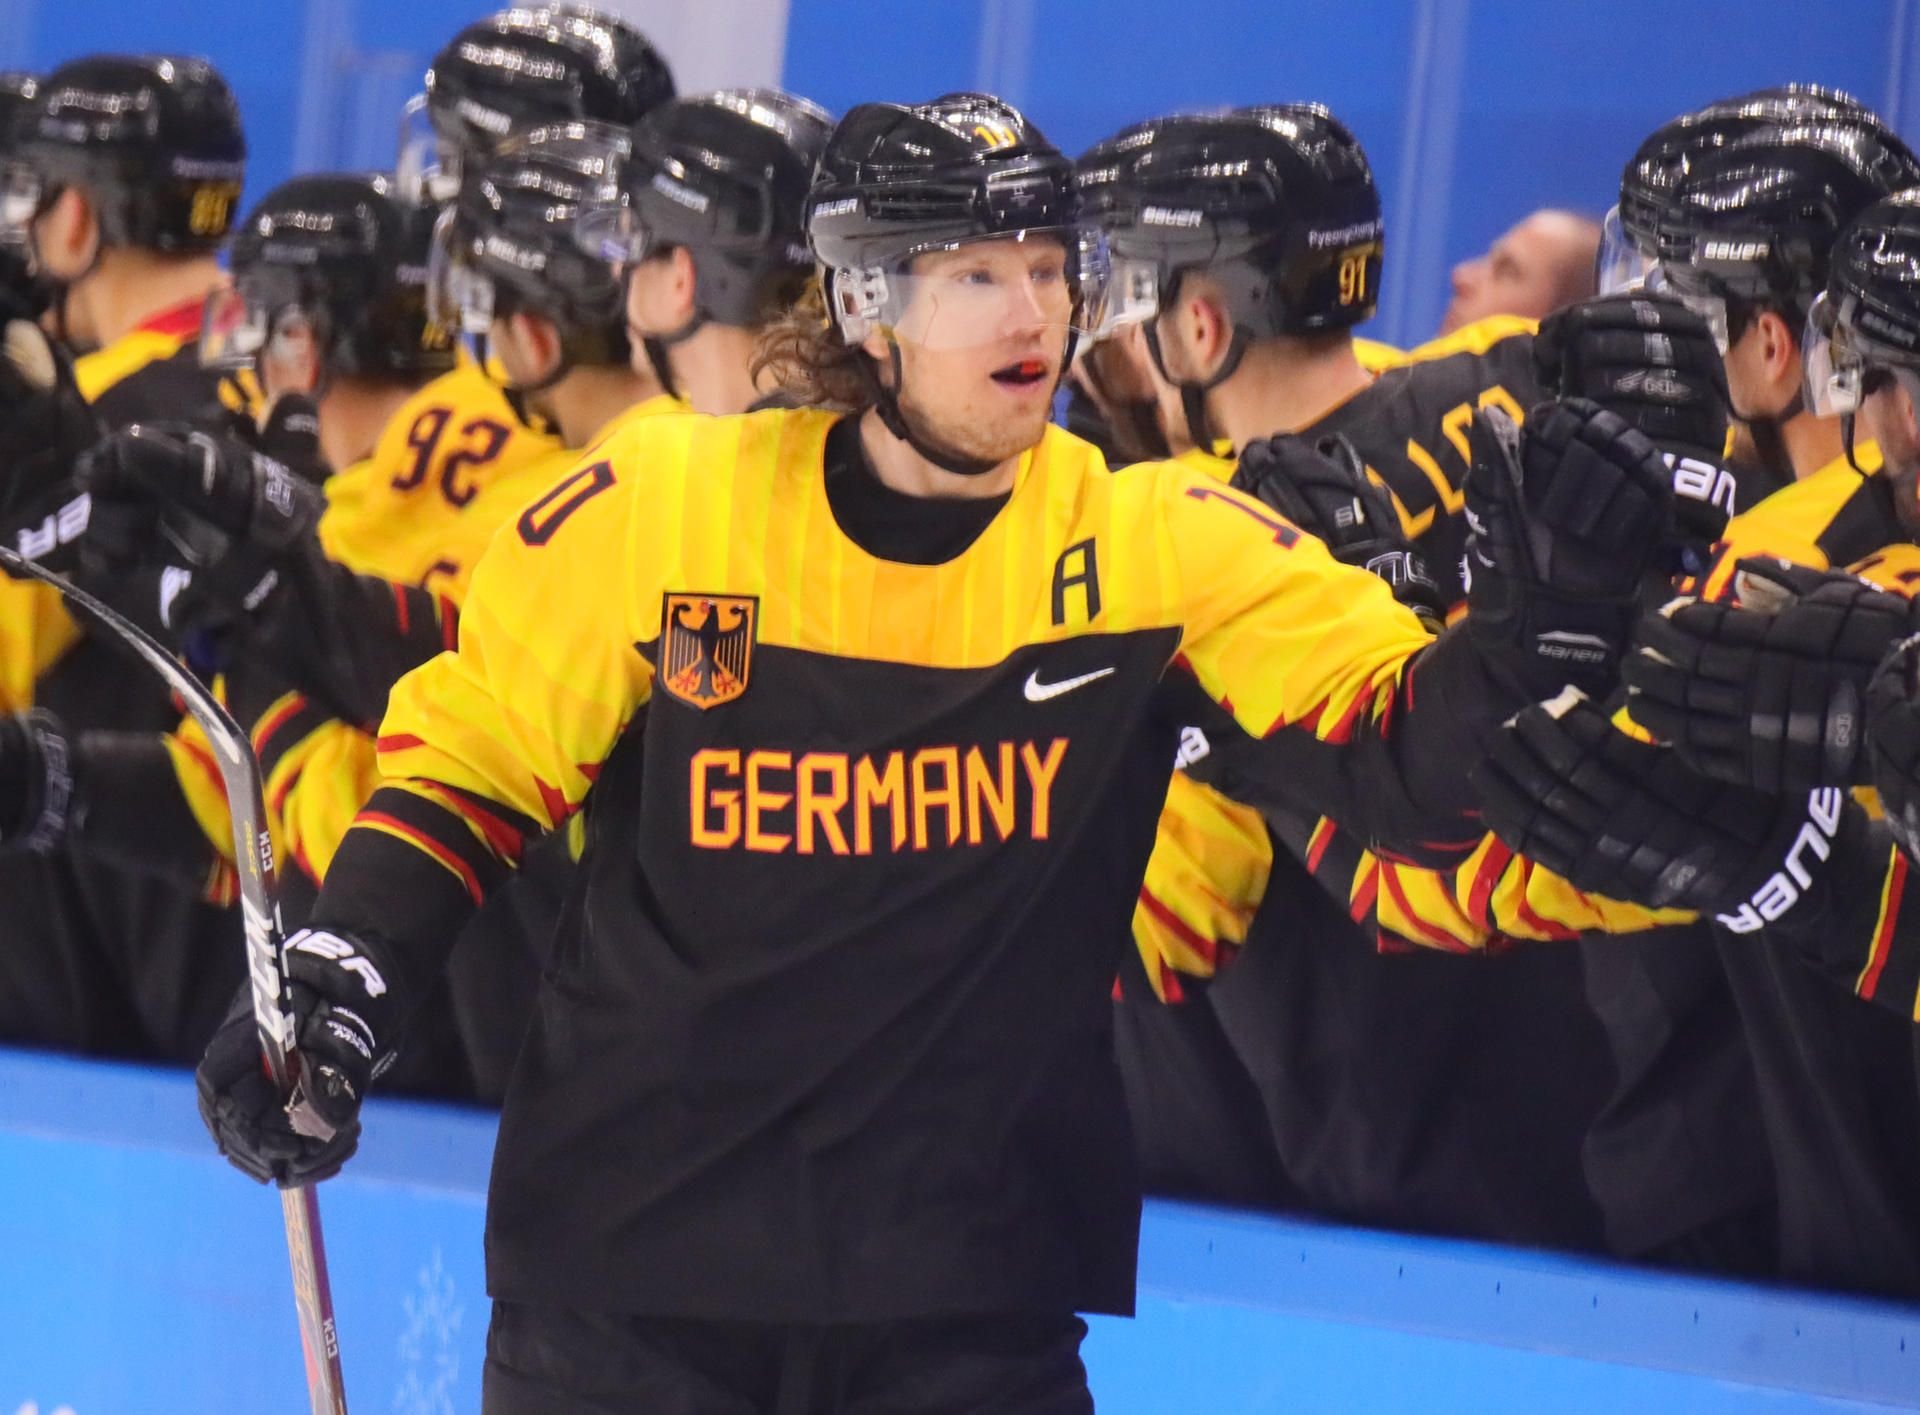 Olympia Olympia Eishockey-Star Christian Ehrhoff trägt bei der Abschlussfeier die deutsche Fahne